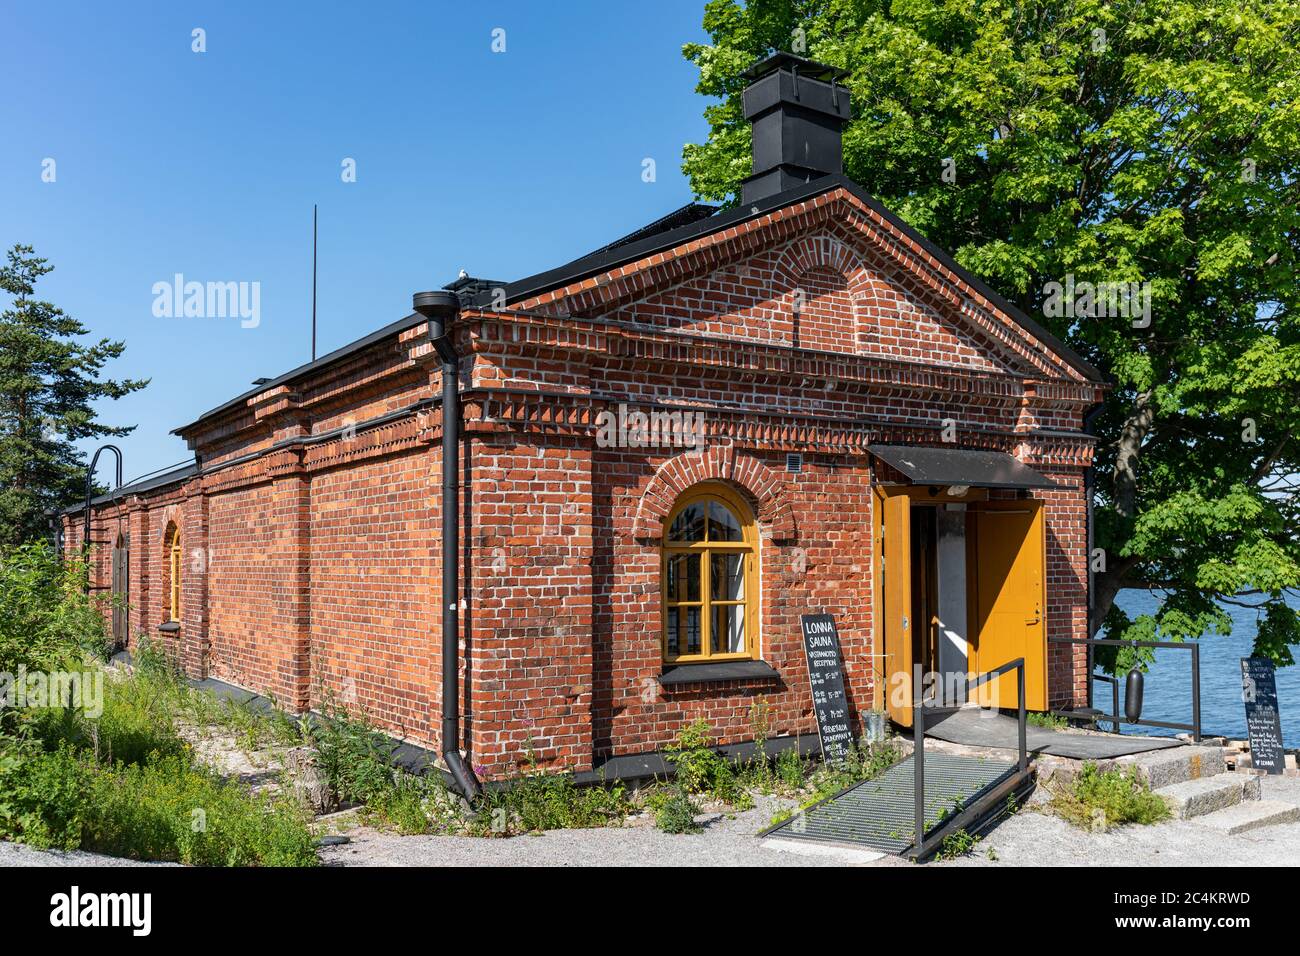 Sauna pubblica all'isola di Lonna in un vecchio edificio militare in mattoni rossi nell'arcipelago di Helsinki, Finlandia Foto Stock